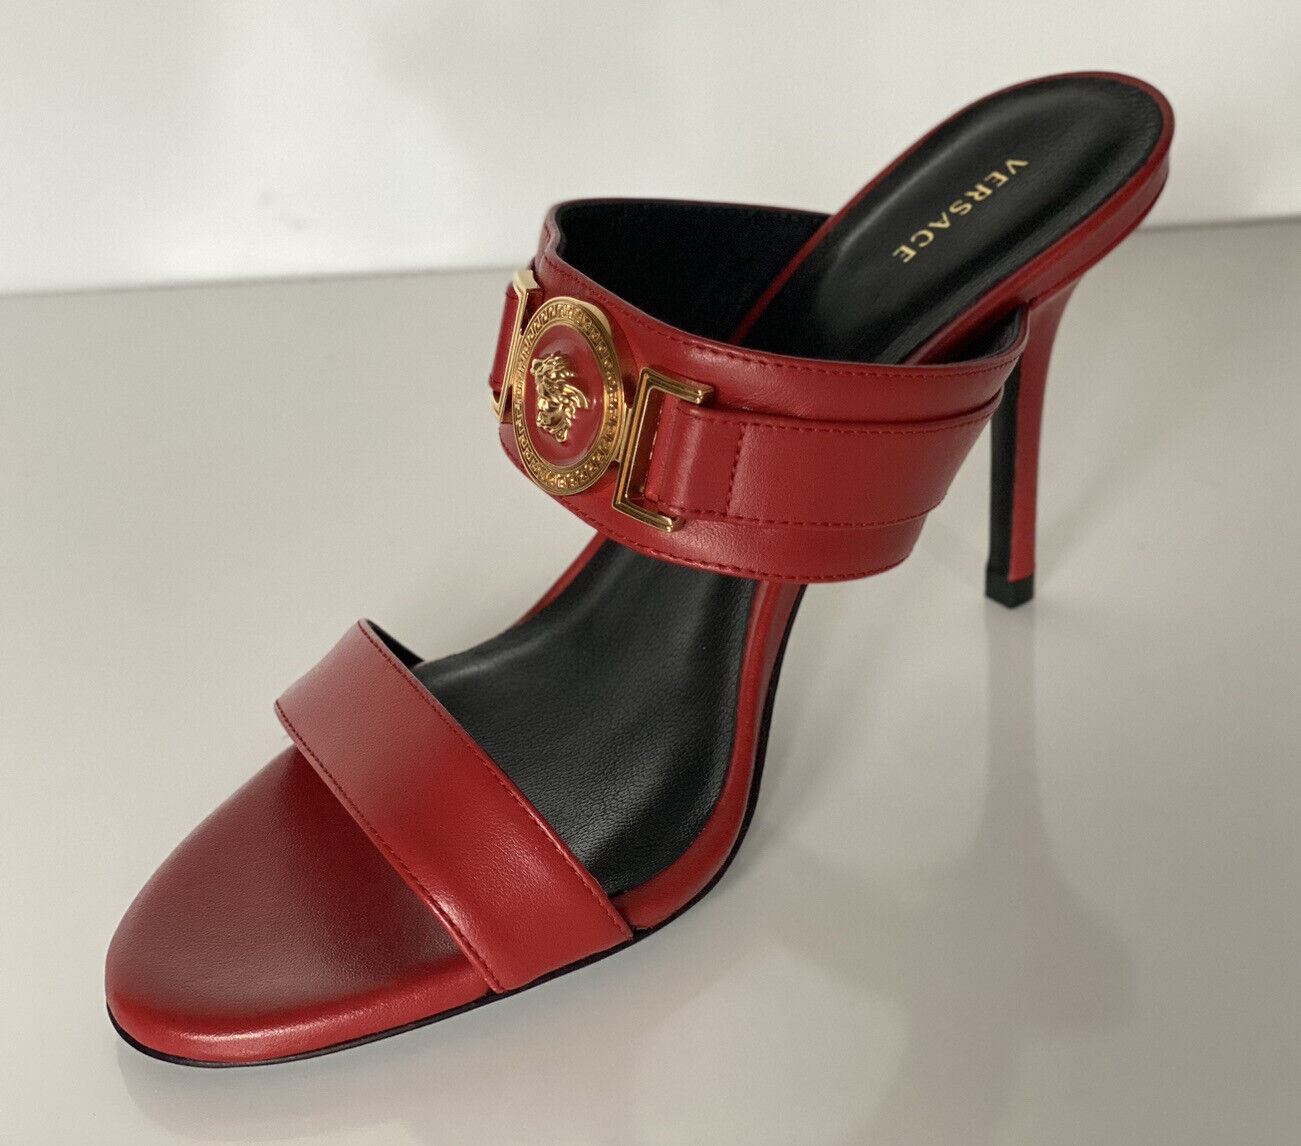 NIB VERSACE Женские красные туфли-лодочки Medusa 9,5 США (39,5 евро) Италия D1NPS 